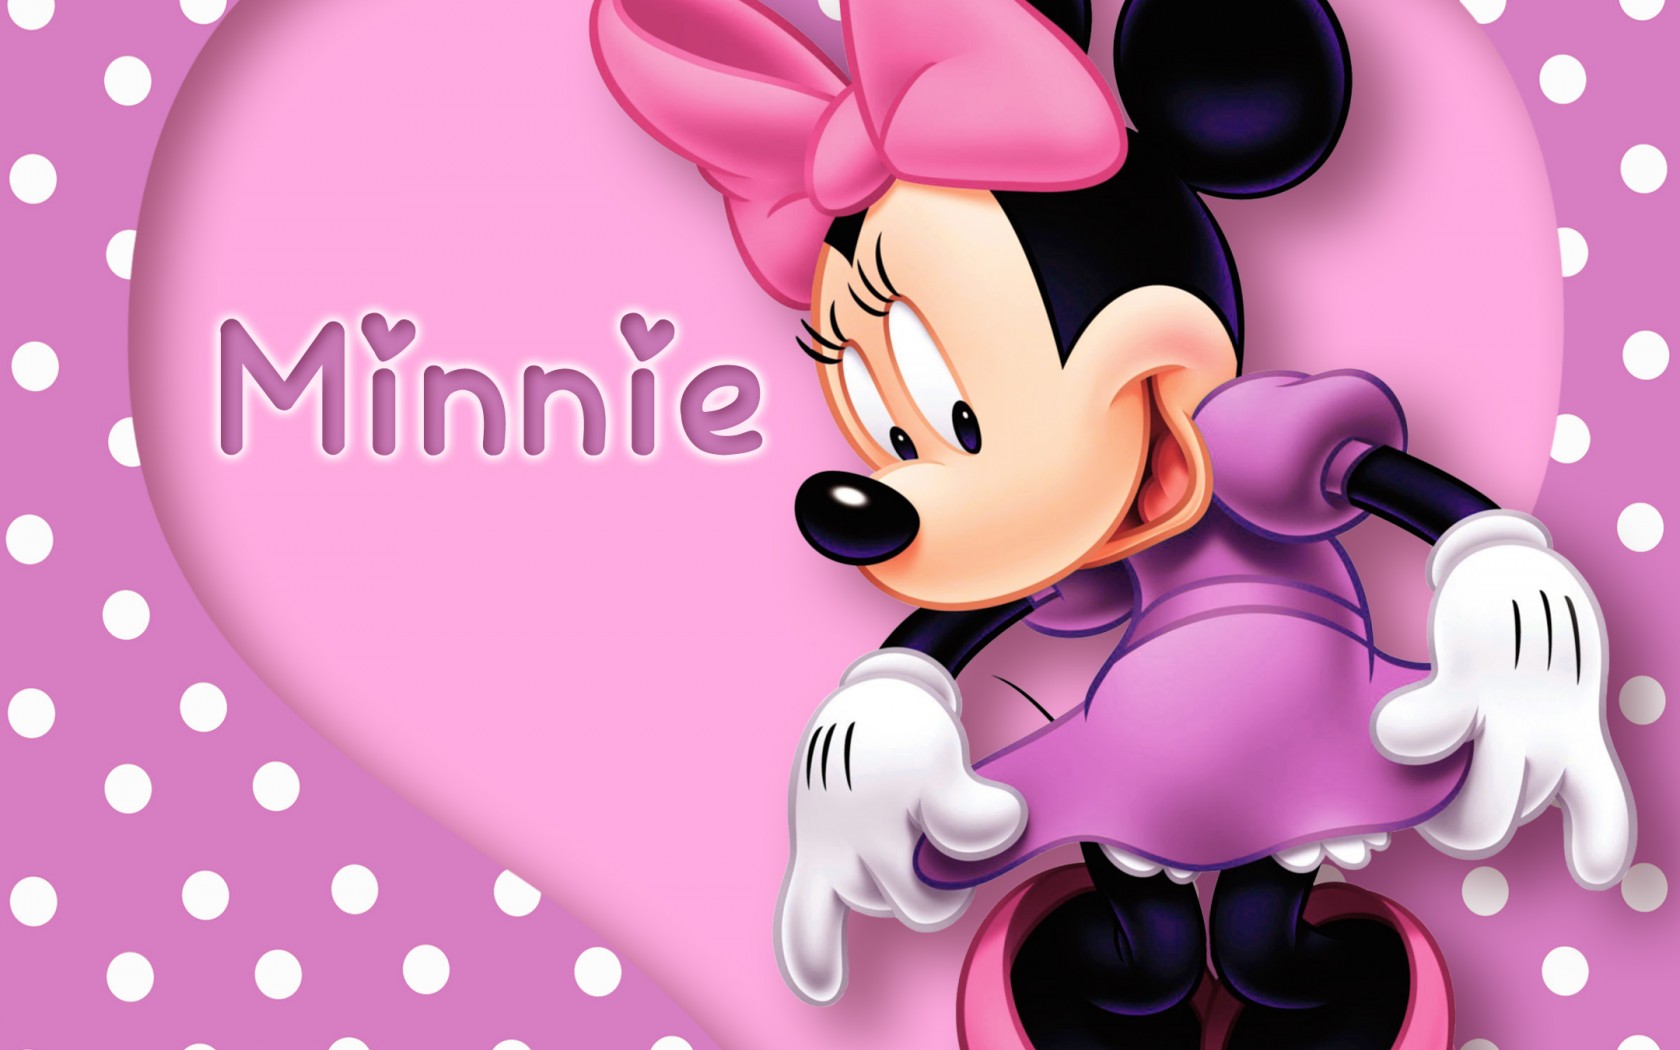 Minnie Mouse Wallpaper Minnie Mouse Wallpaper Minnie Mouse Wallpaper